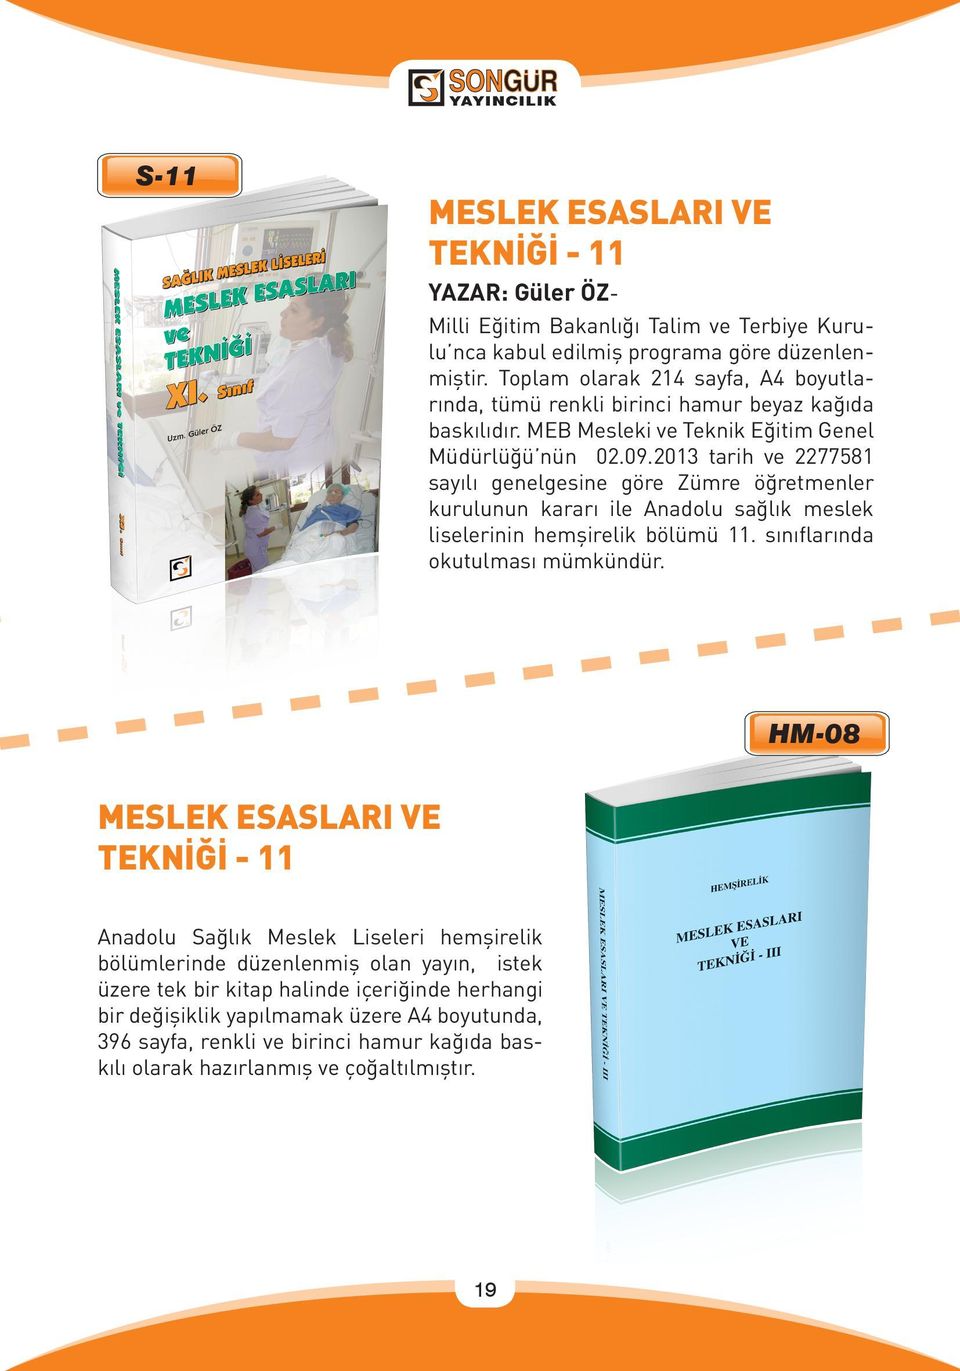 2013 tarih ve 2277581 sayılı genelgesine göre Zümre öğretmenler kurulunun kararı ile Anadolu sağlık meslek liselerinin hemşirelik bölümü 11. sınıflarında okutulması mümkündür.